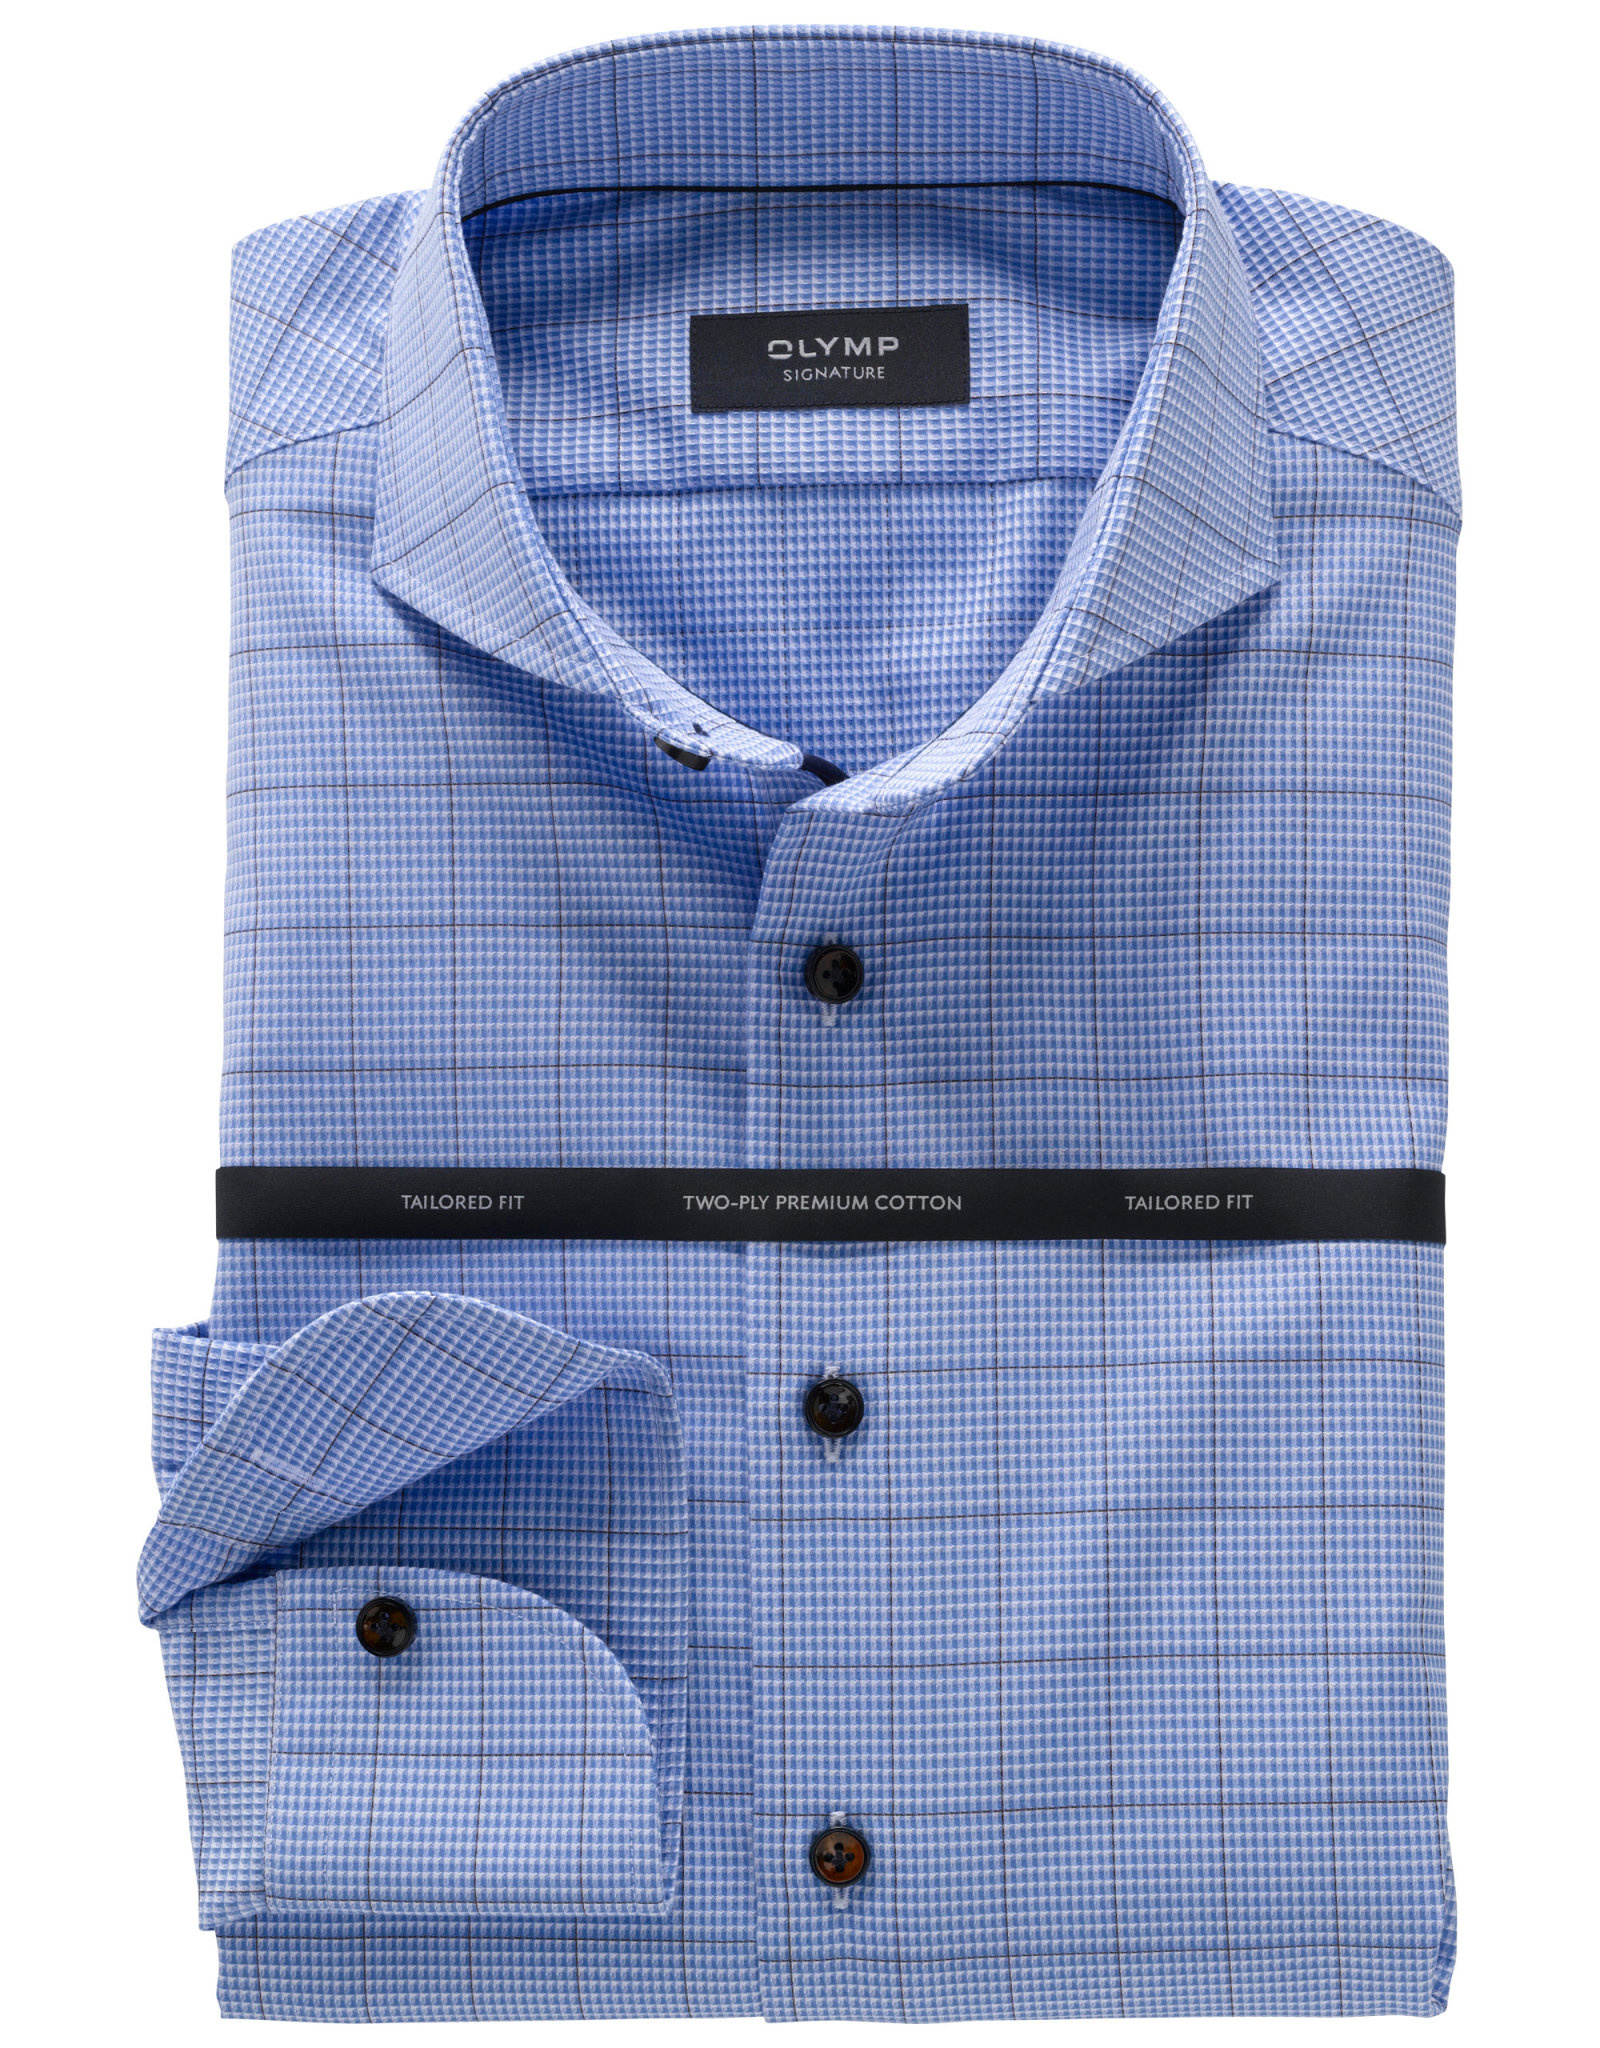 Uittreksel voorstel verkopen Olymp Signature overhemd blauwe ruit | Tim Menswear - Tim Menswear